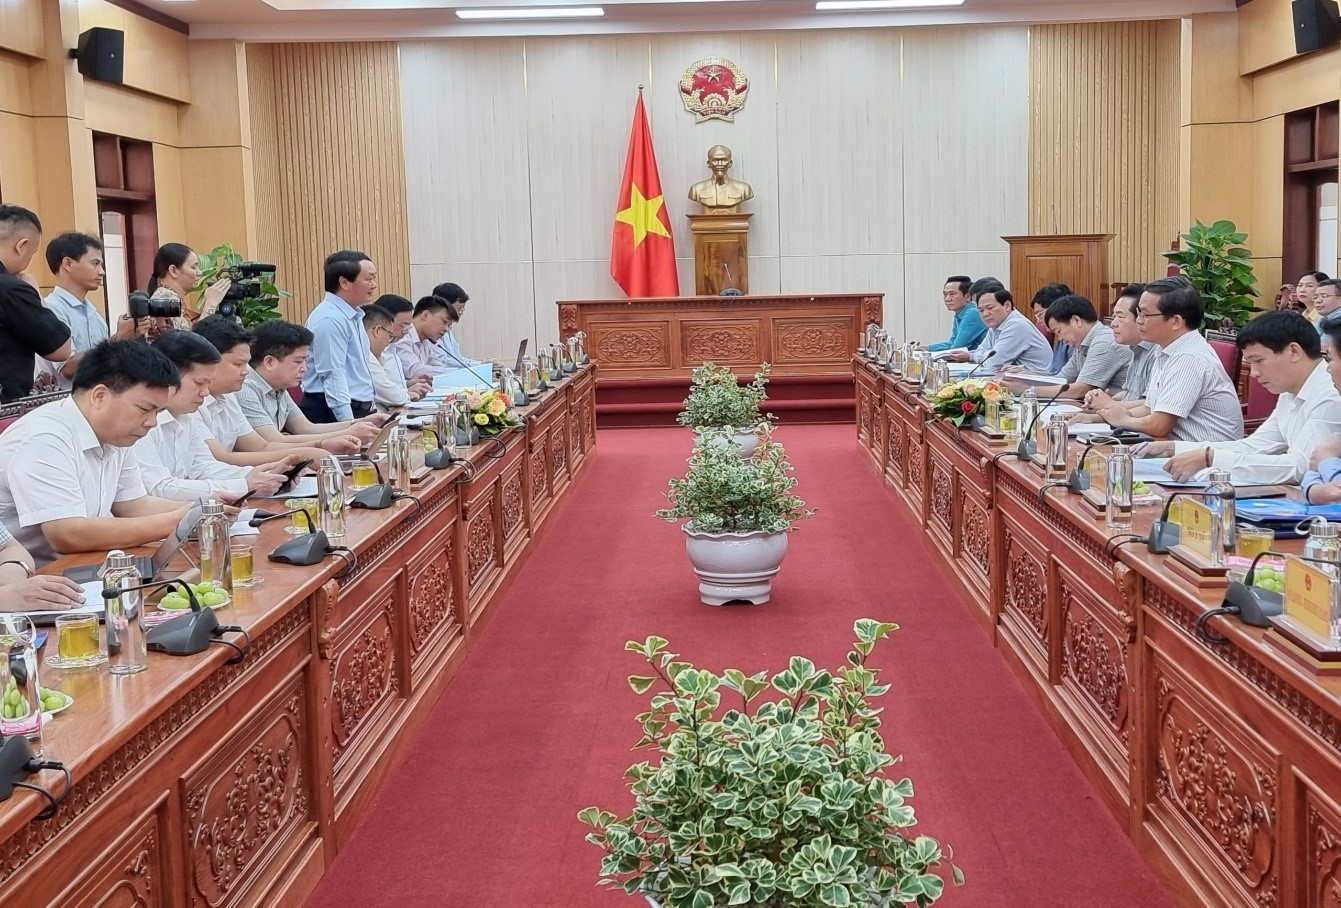 Đoàn công tác của Ủy ban Dân tộc làm việc với tỉnh Quảng Ngãi về kết quả thực hiện Chương trình mục tiêu quốc gia phát triển kinh tế - xã hội vùng đồng bào dân tộc thiểu số và miền núi